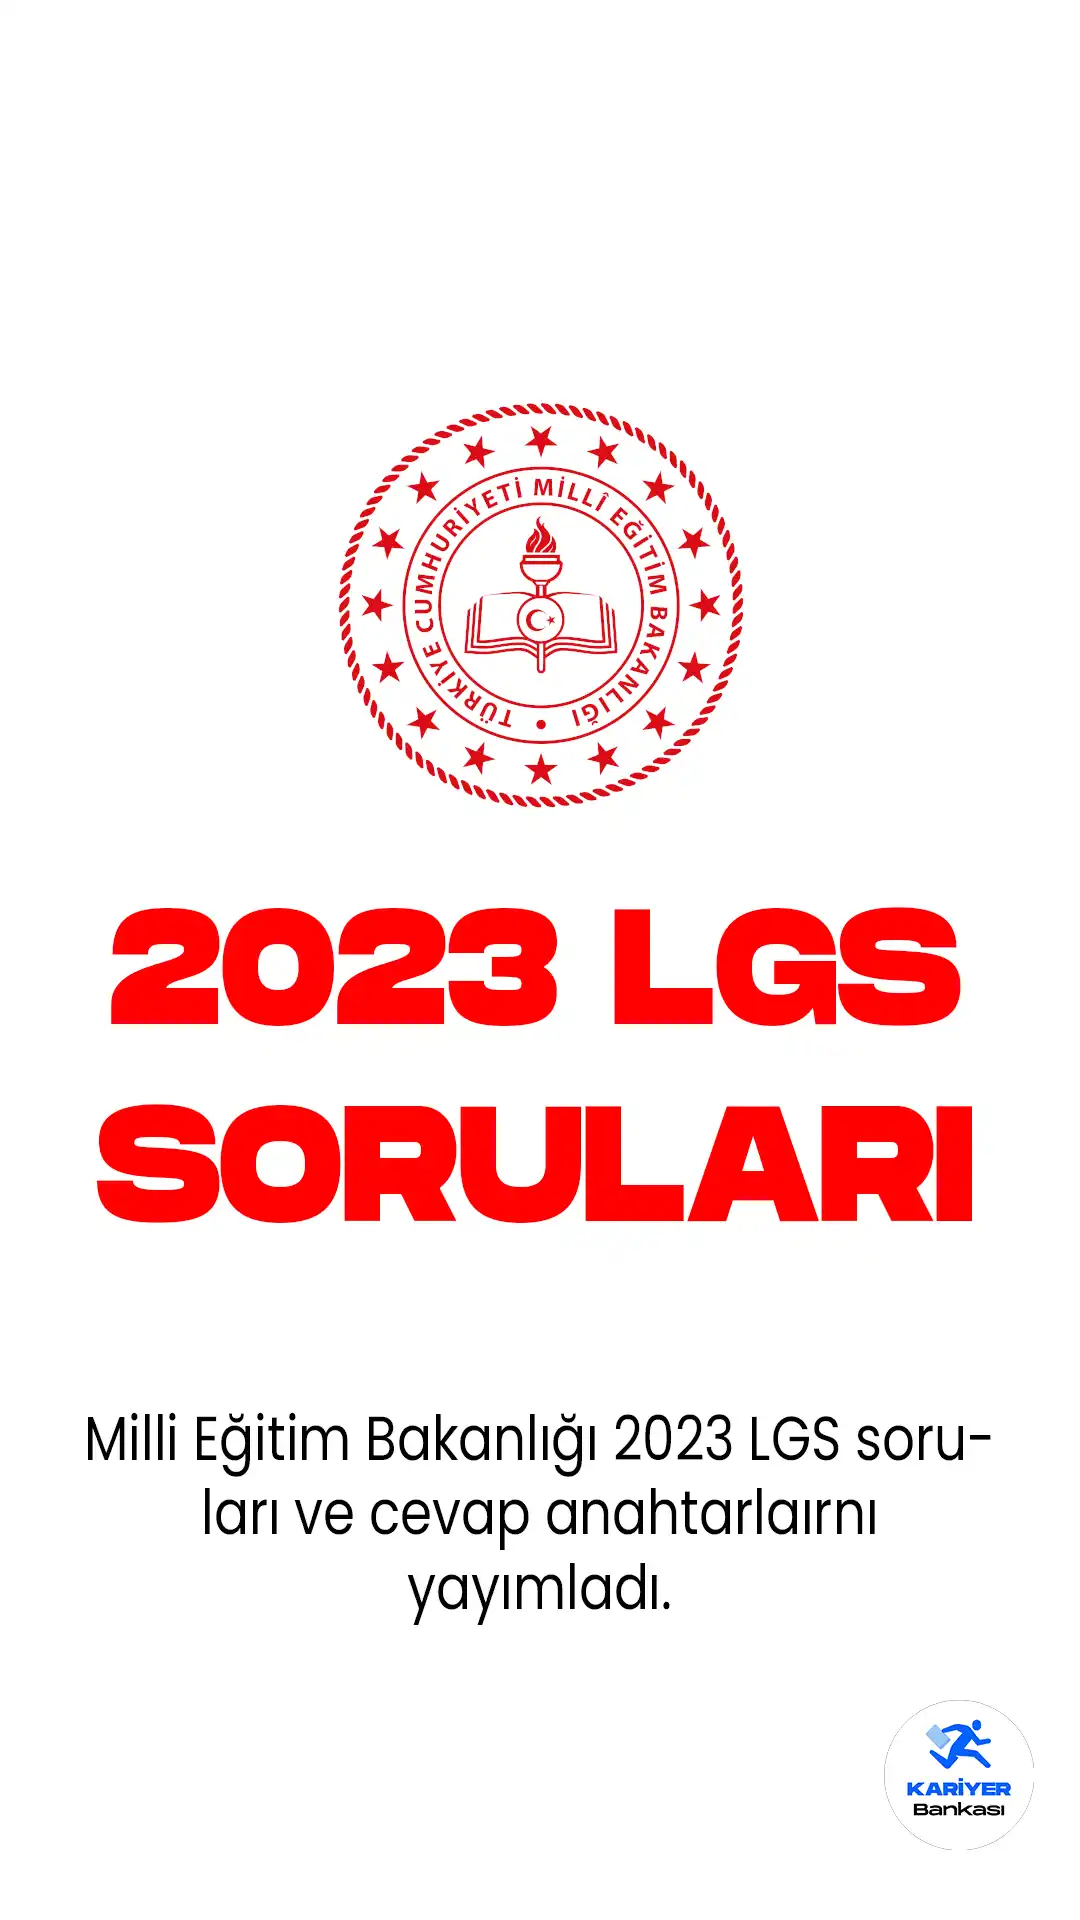 2023 LGS sınav soruları ve cevap anahtarları yayımlandı. Bugün iki oturum halinde uygulanan 2023 LGS'ye ait sorular ve cevaplar az önce MEB tarafından yayımlandı.